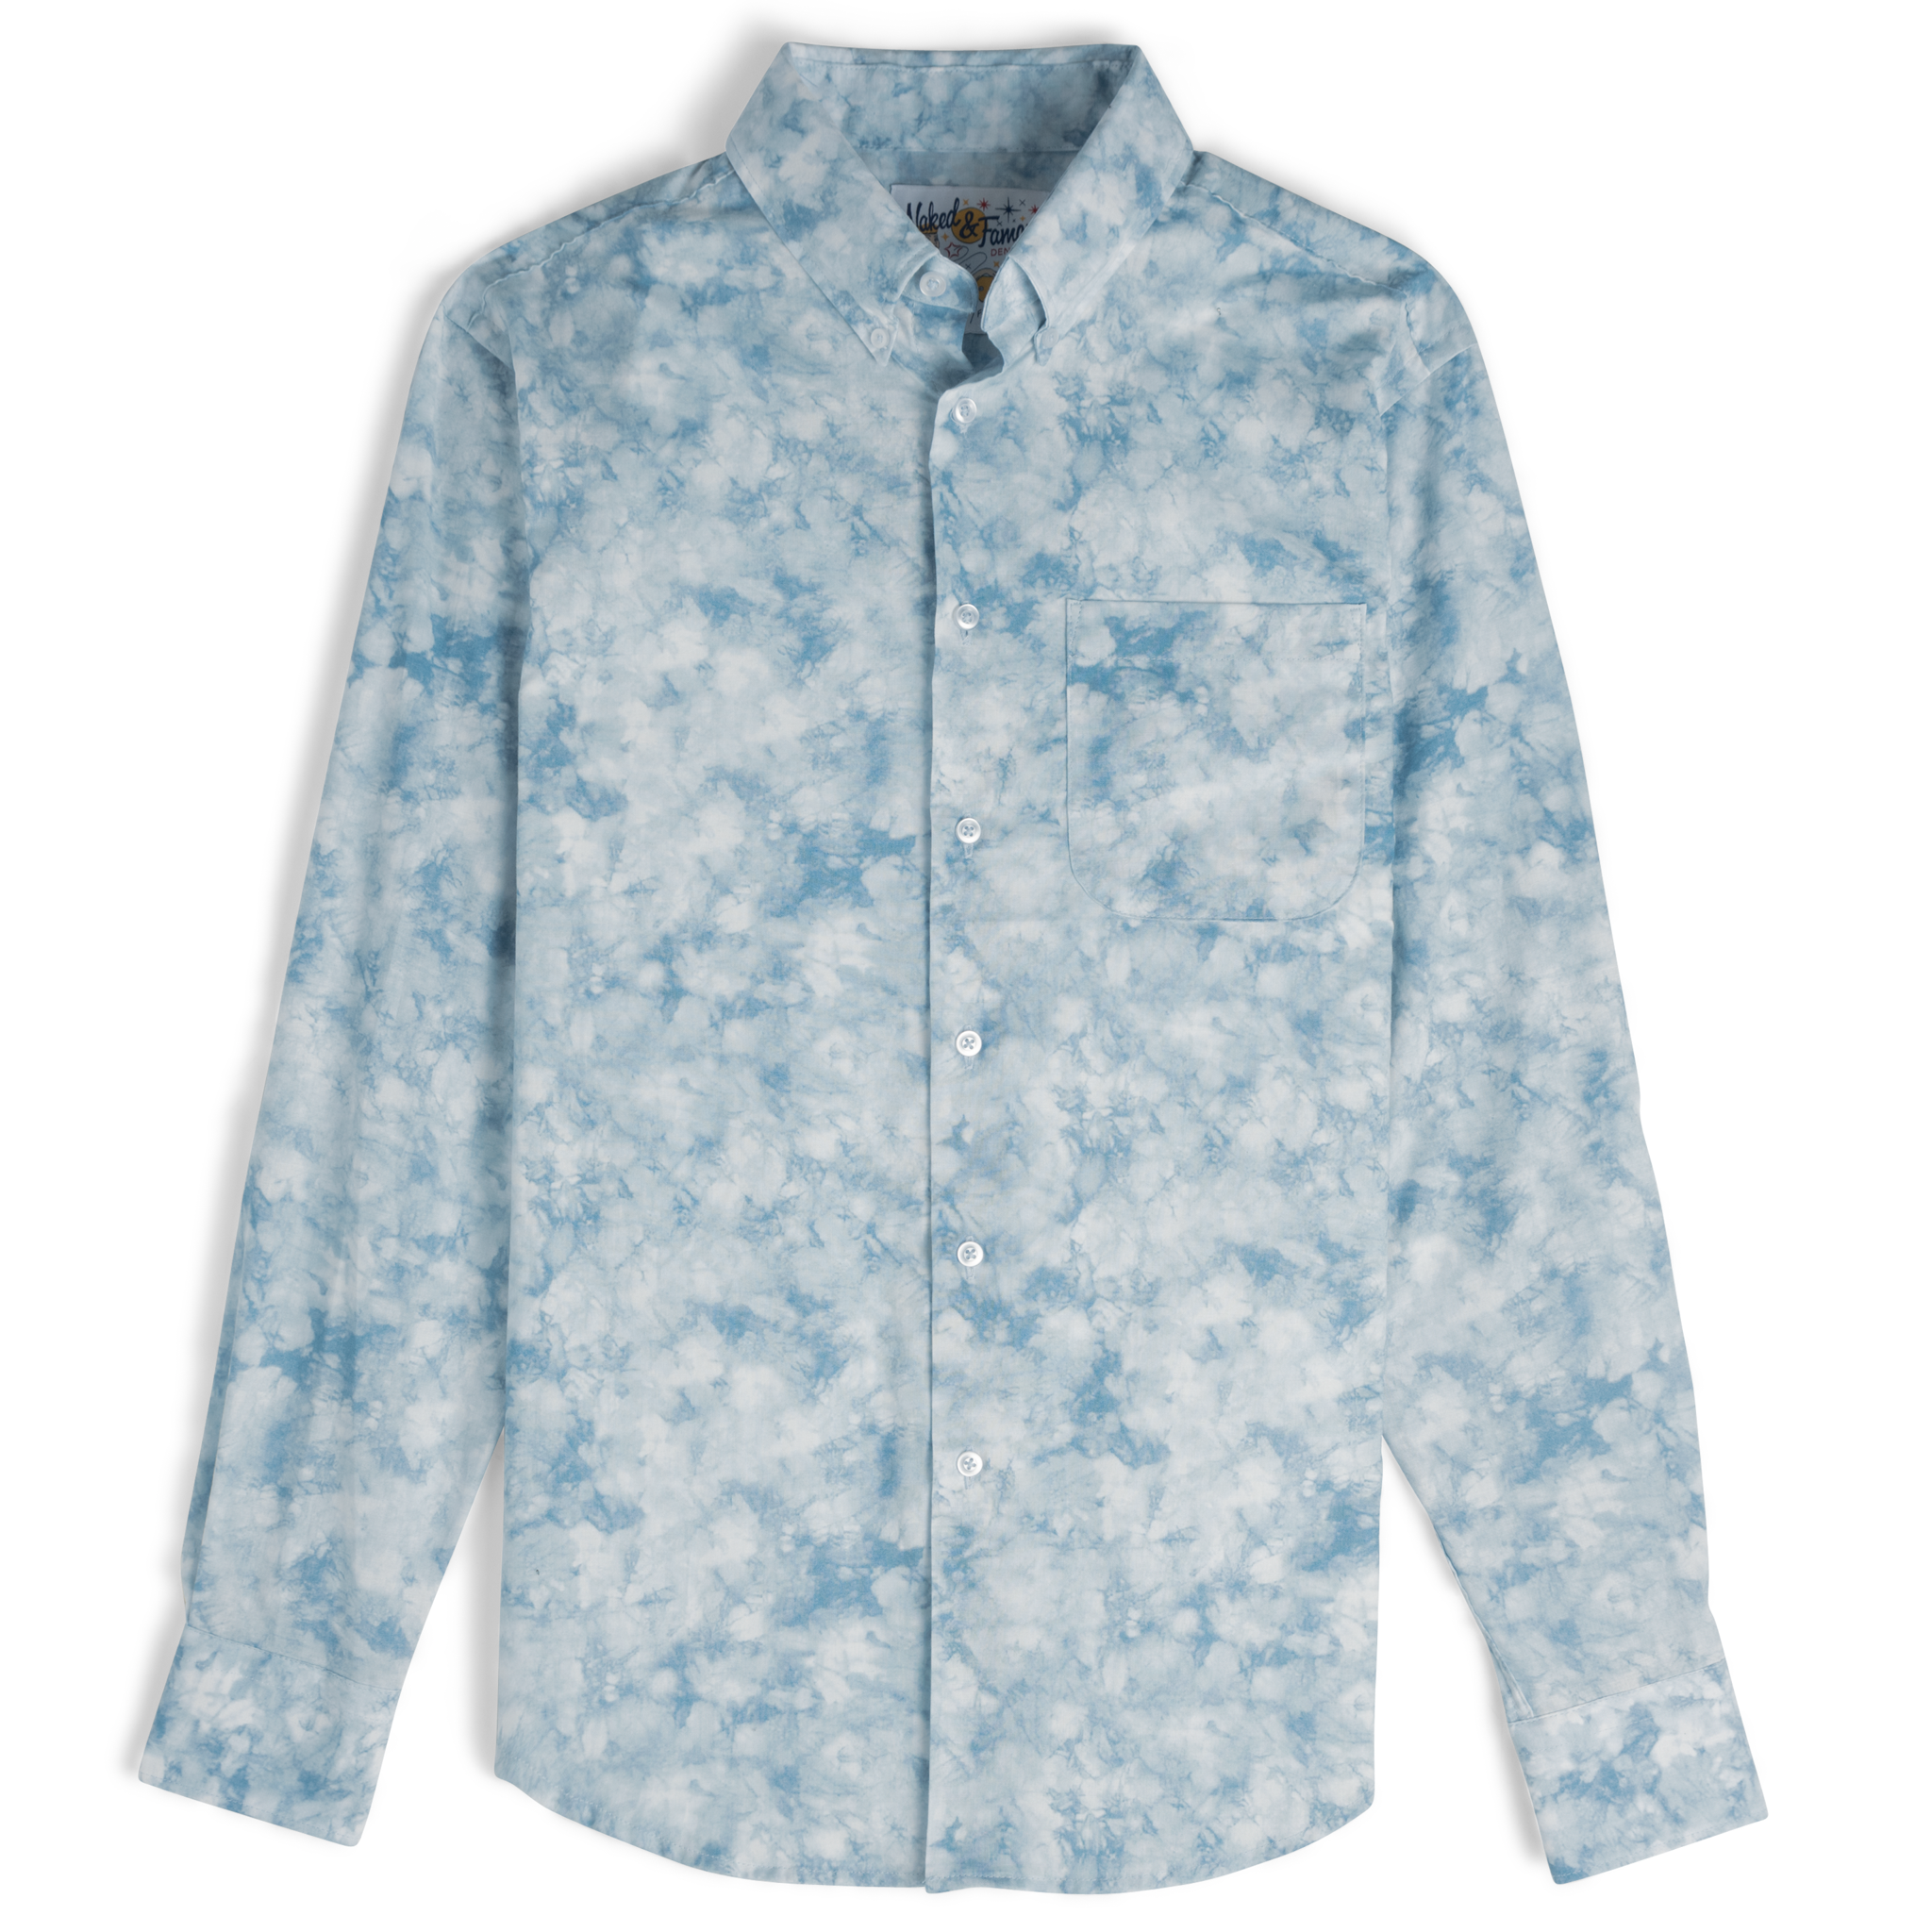  Easy Shirt - Tie Dye Print - Pale Blue - flat front 